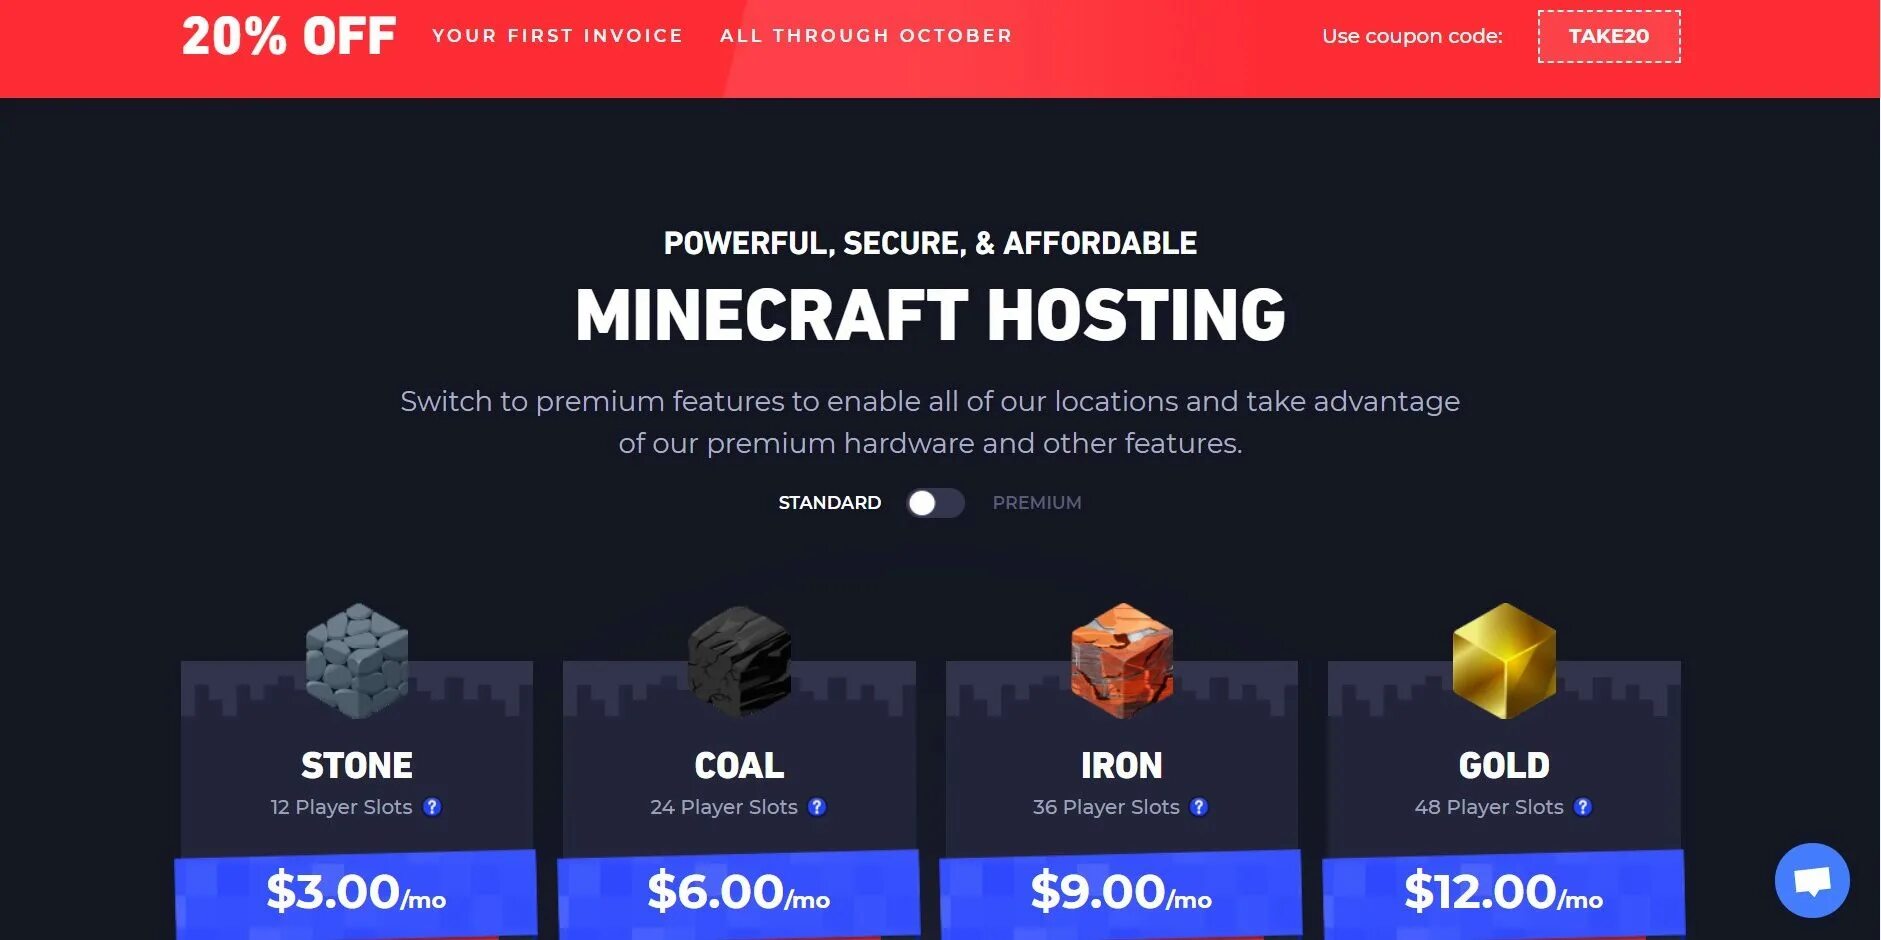 Хостинг майнкрафт. Хостинг серверов Minecraft. Дешевый хостинг майнкрафт сервера. Самый дешевый хостинг майнкрафт. Minecraft хостинг топ